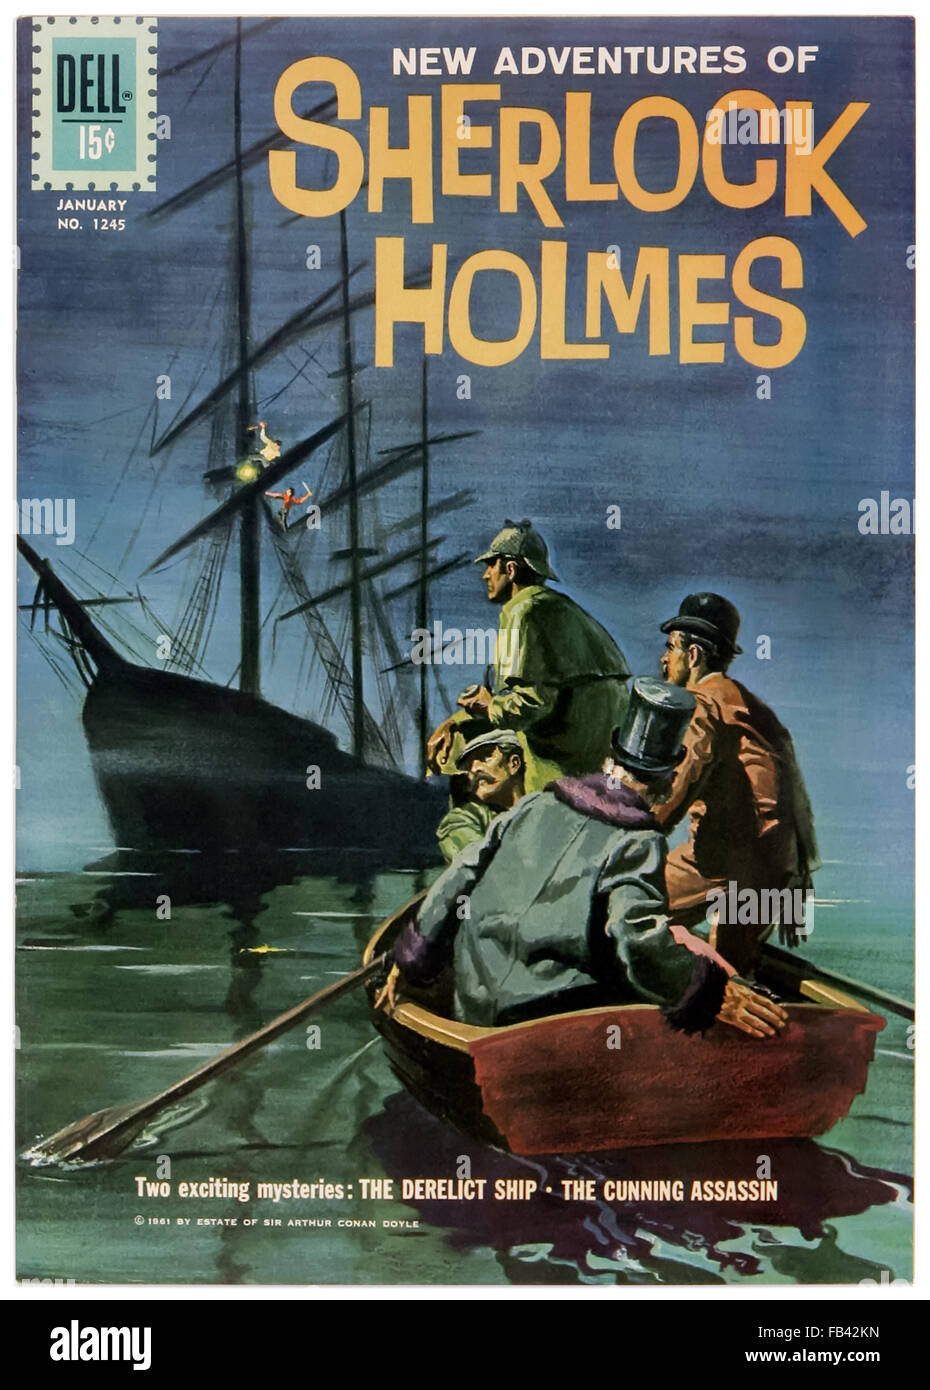 "Les nouvelles aventures de Sherlock Holmes' Dell Comics Question 1169 Janvier 1961 bd illustré par Frank Giacoia (1924-1988) avec "le navire abandonné' et 'L' assassin rusé. Voir la description pour plus d'informations. Banque D'Images